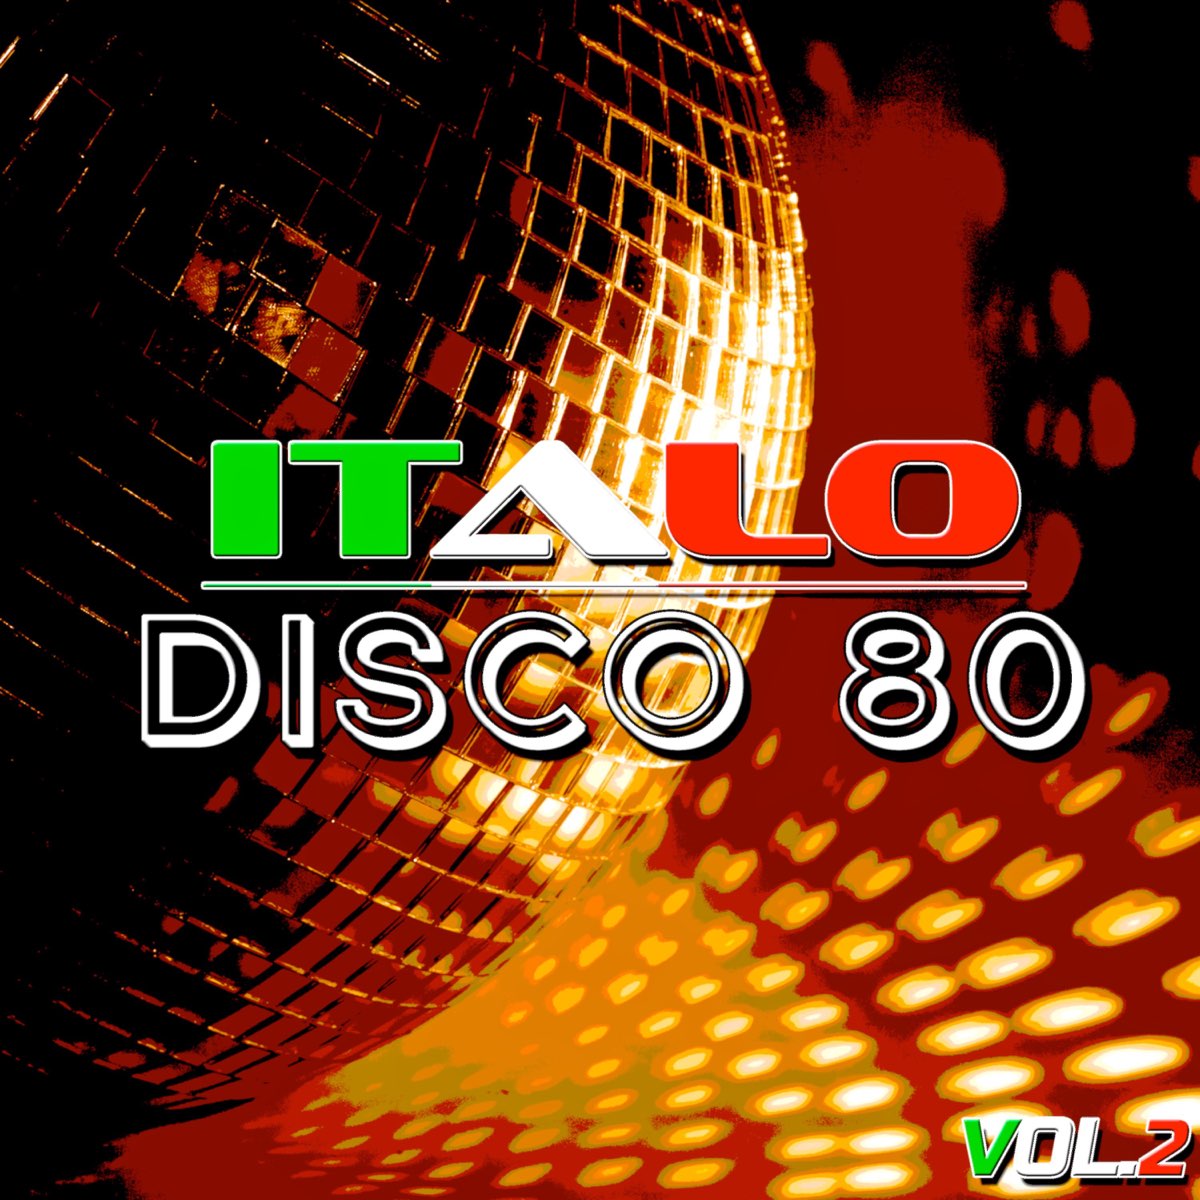 Италия 80 музыка. Итало диско. Итало диско 80. Итальянское диско. Итальянское диско 80.